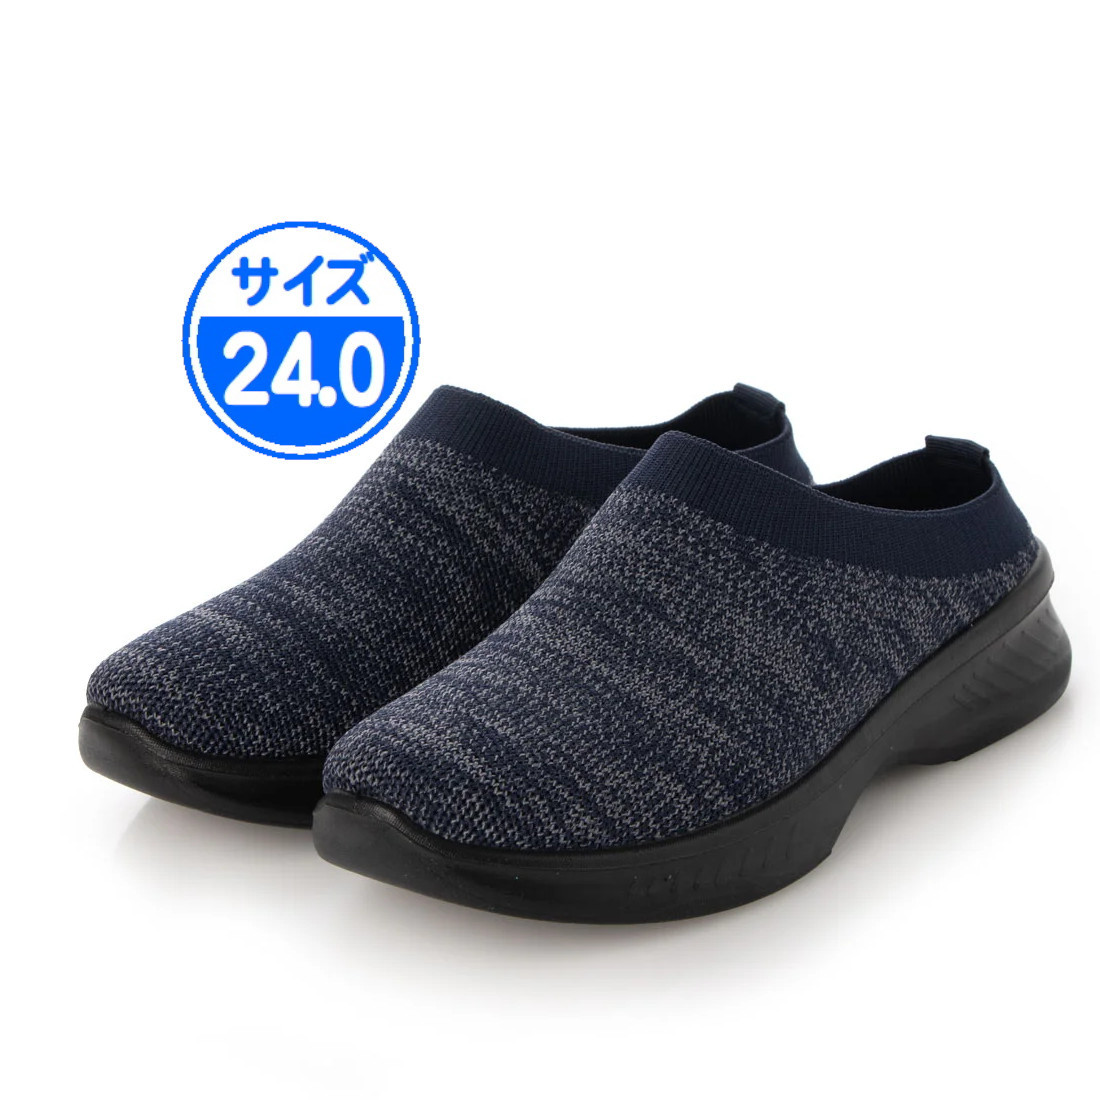 [ новый товар не использовался ]22536 легкий сабо сандалии темно-синий темно-синий 24.0cm